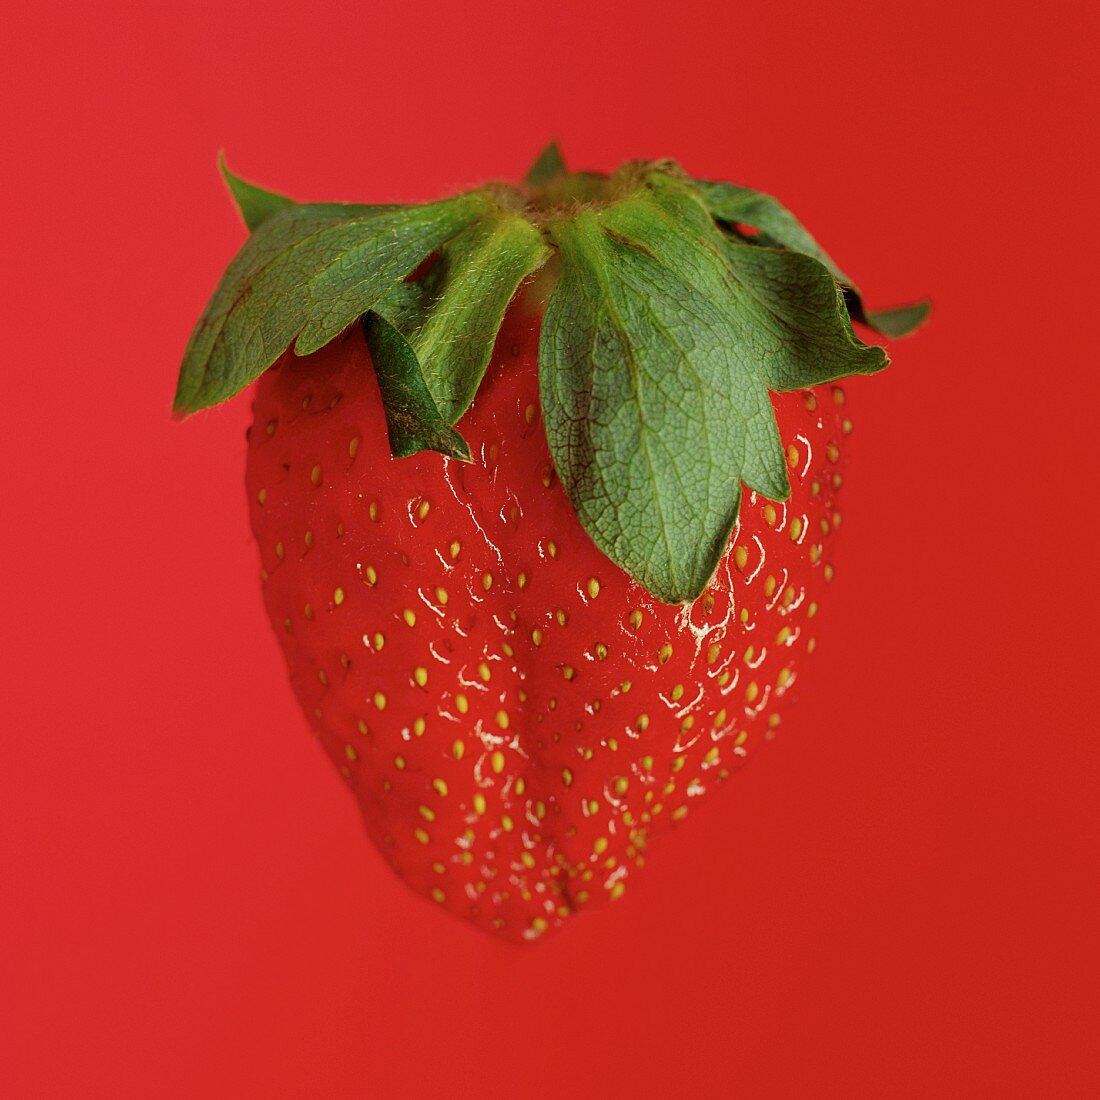 Eine Erdbeere vor rotem Hintergrund